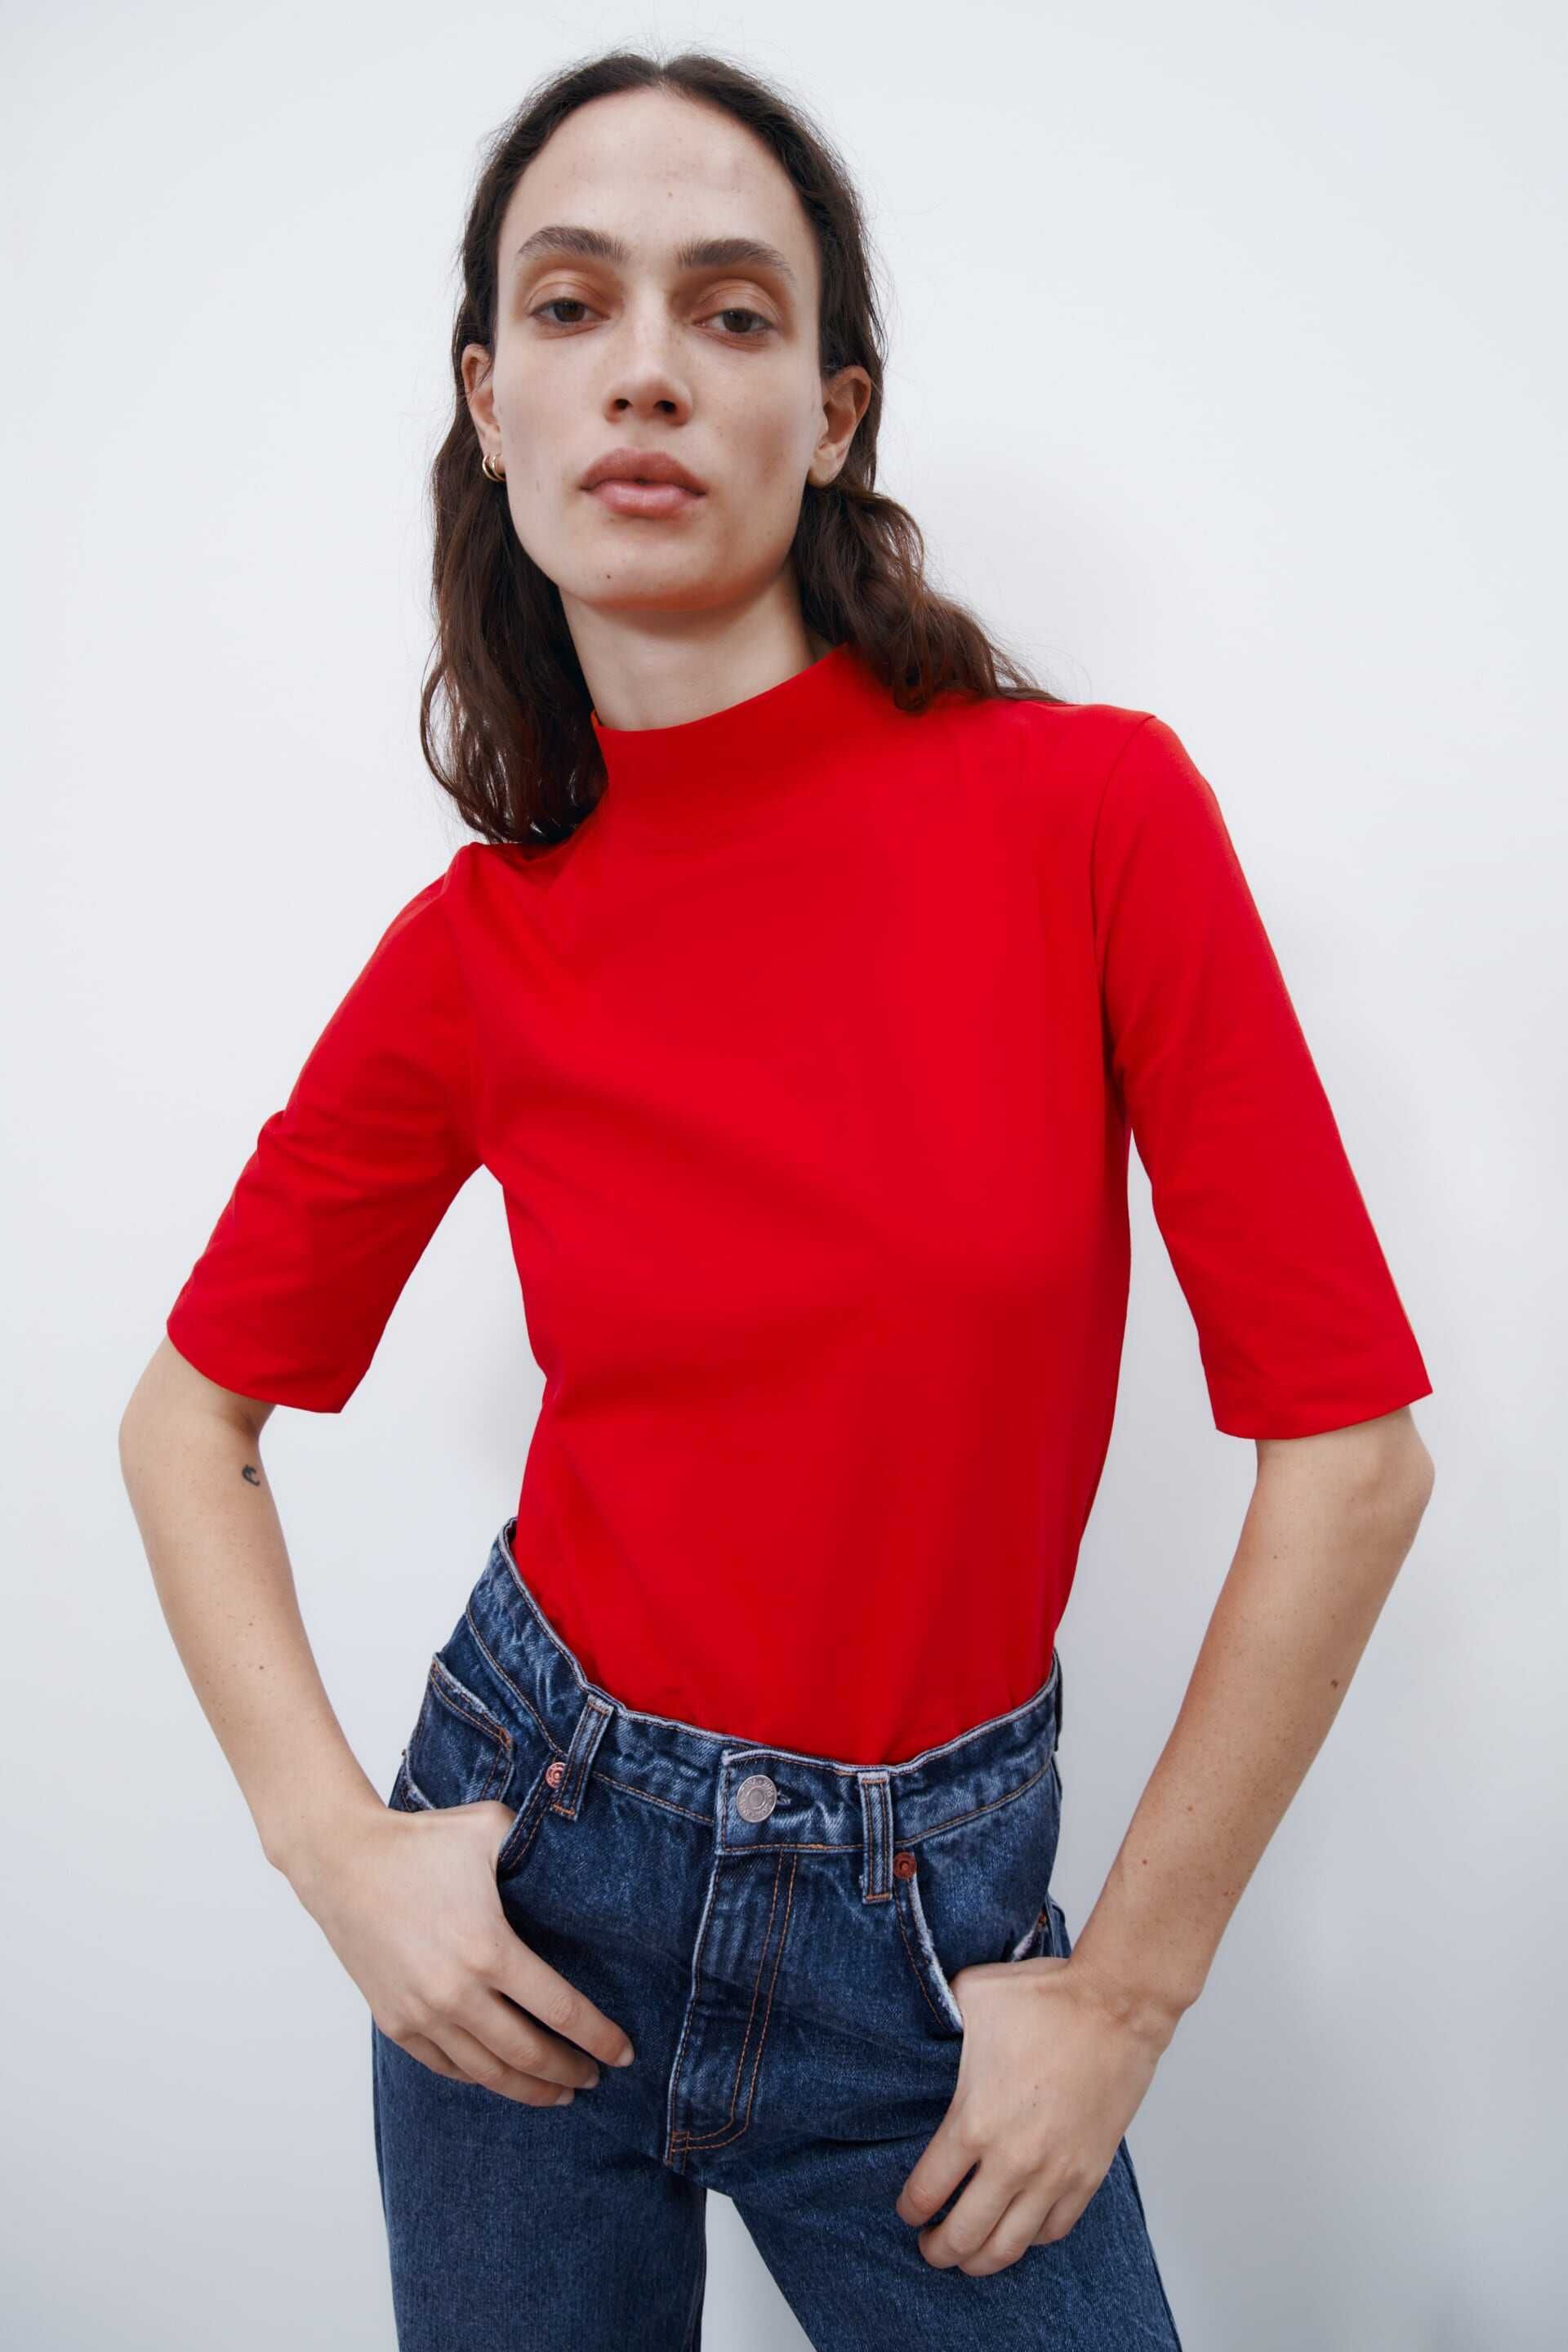 Дамска тениска Zara, 95% памук, 5% еластан, Червена, XL